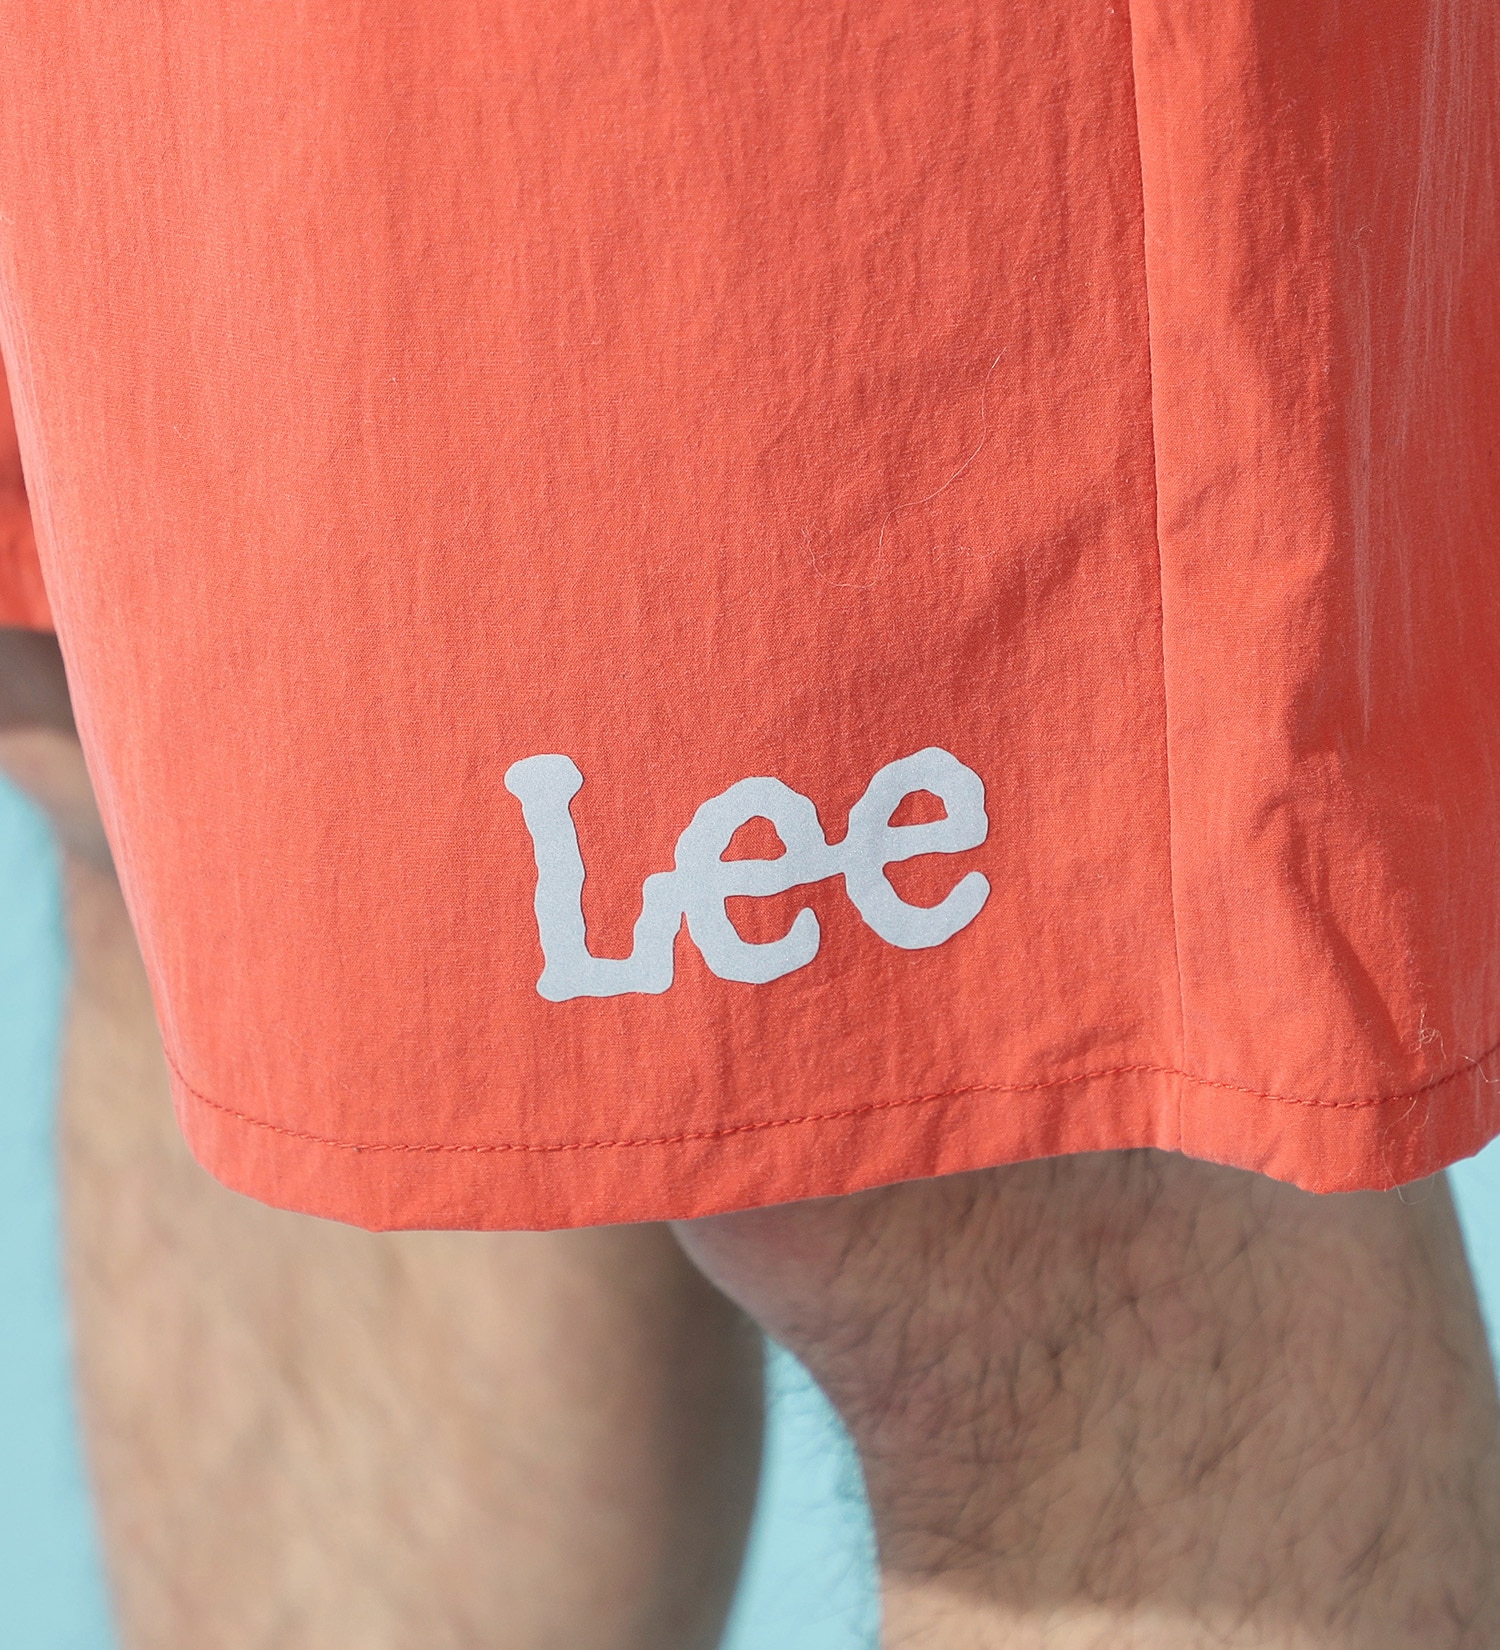 Lee(リー)の【ポイントアップ対象】【試着対象】アスレチックショーツ|パンツ/パンツ/メンズ|オレンジ